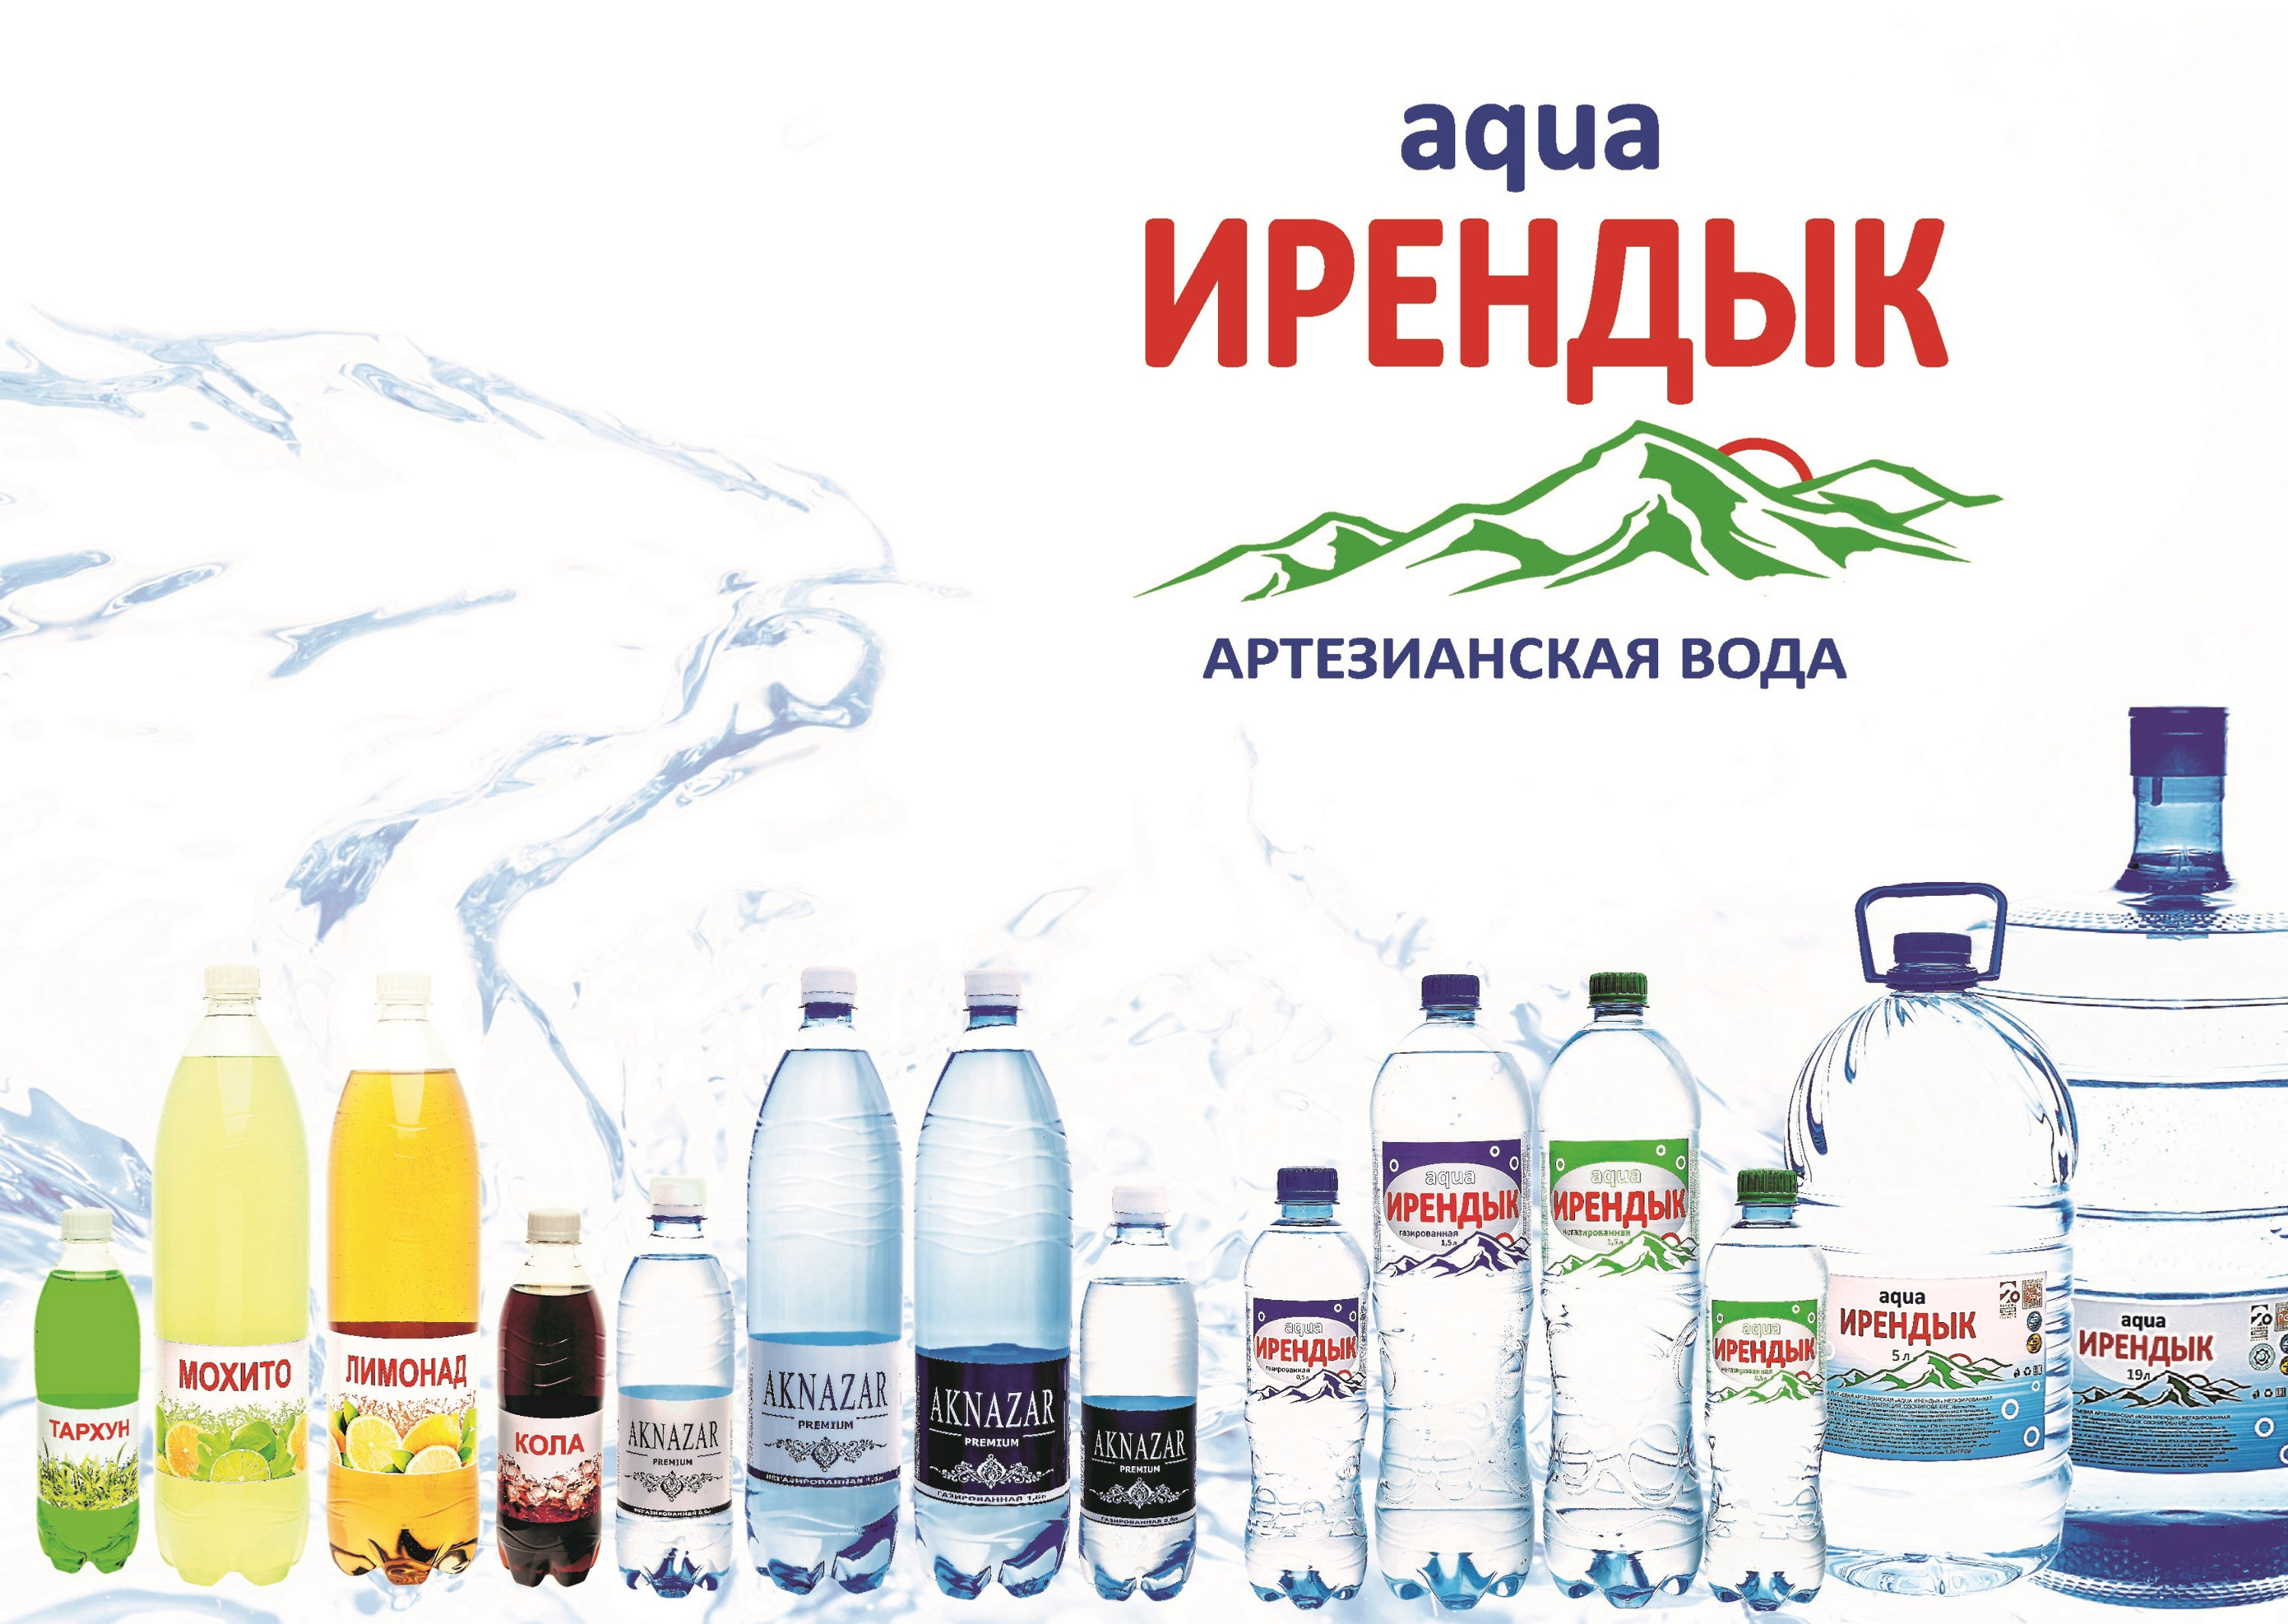 Aqua Ирендык логотип